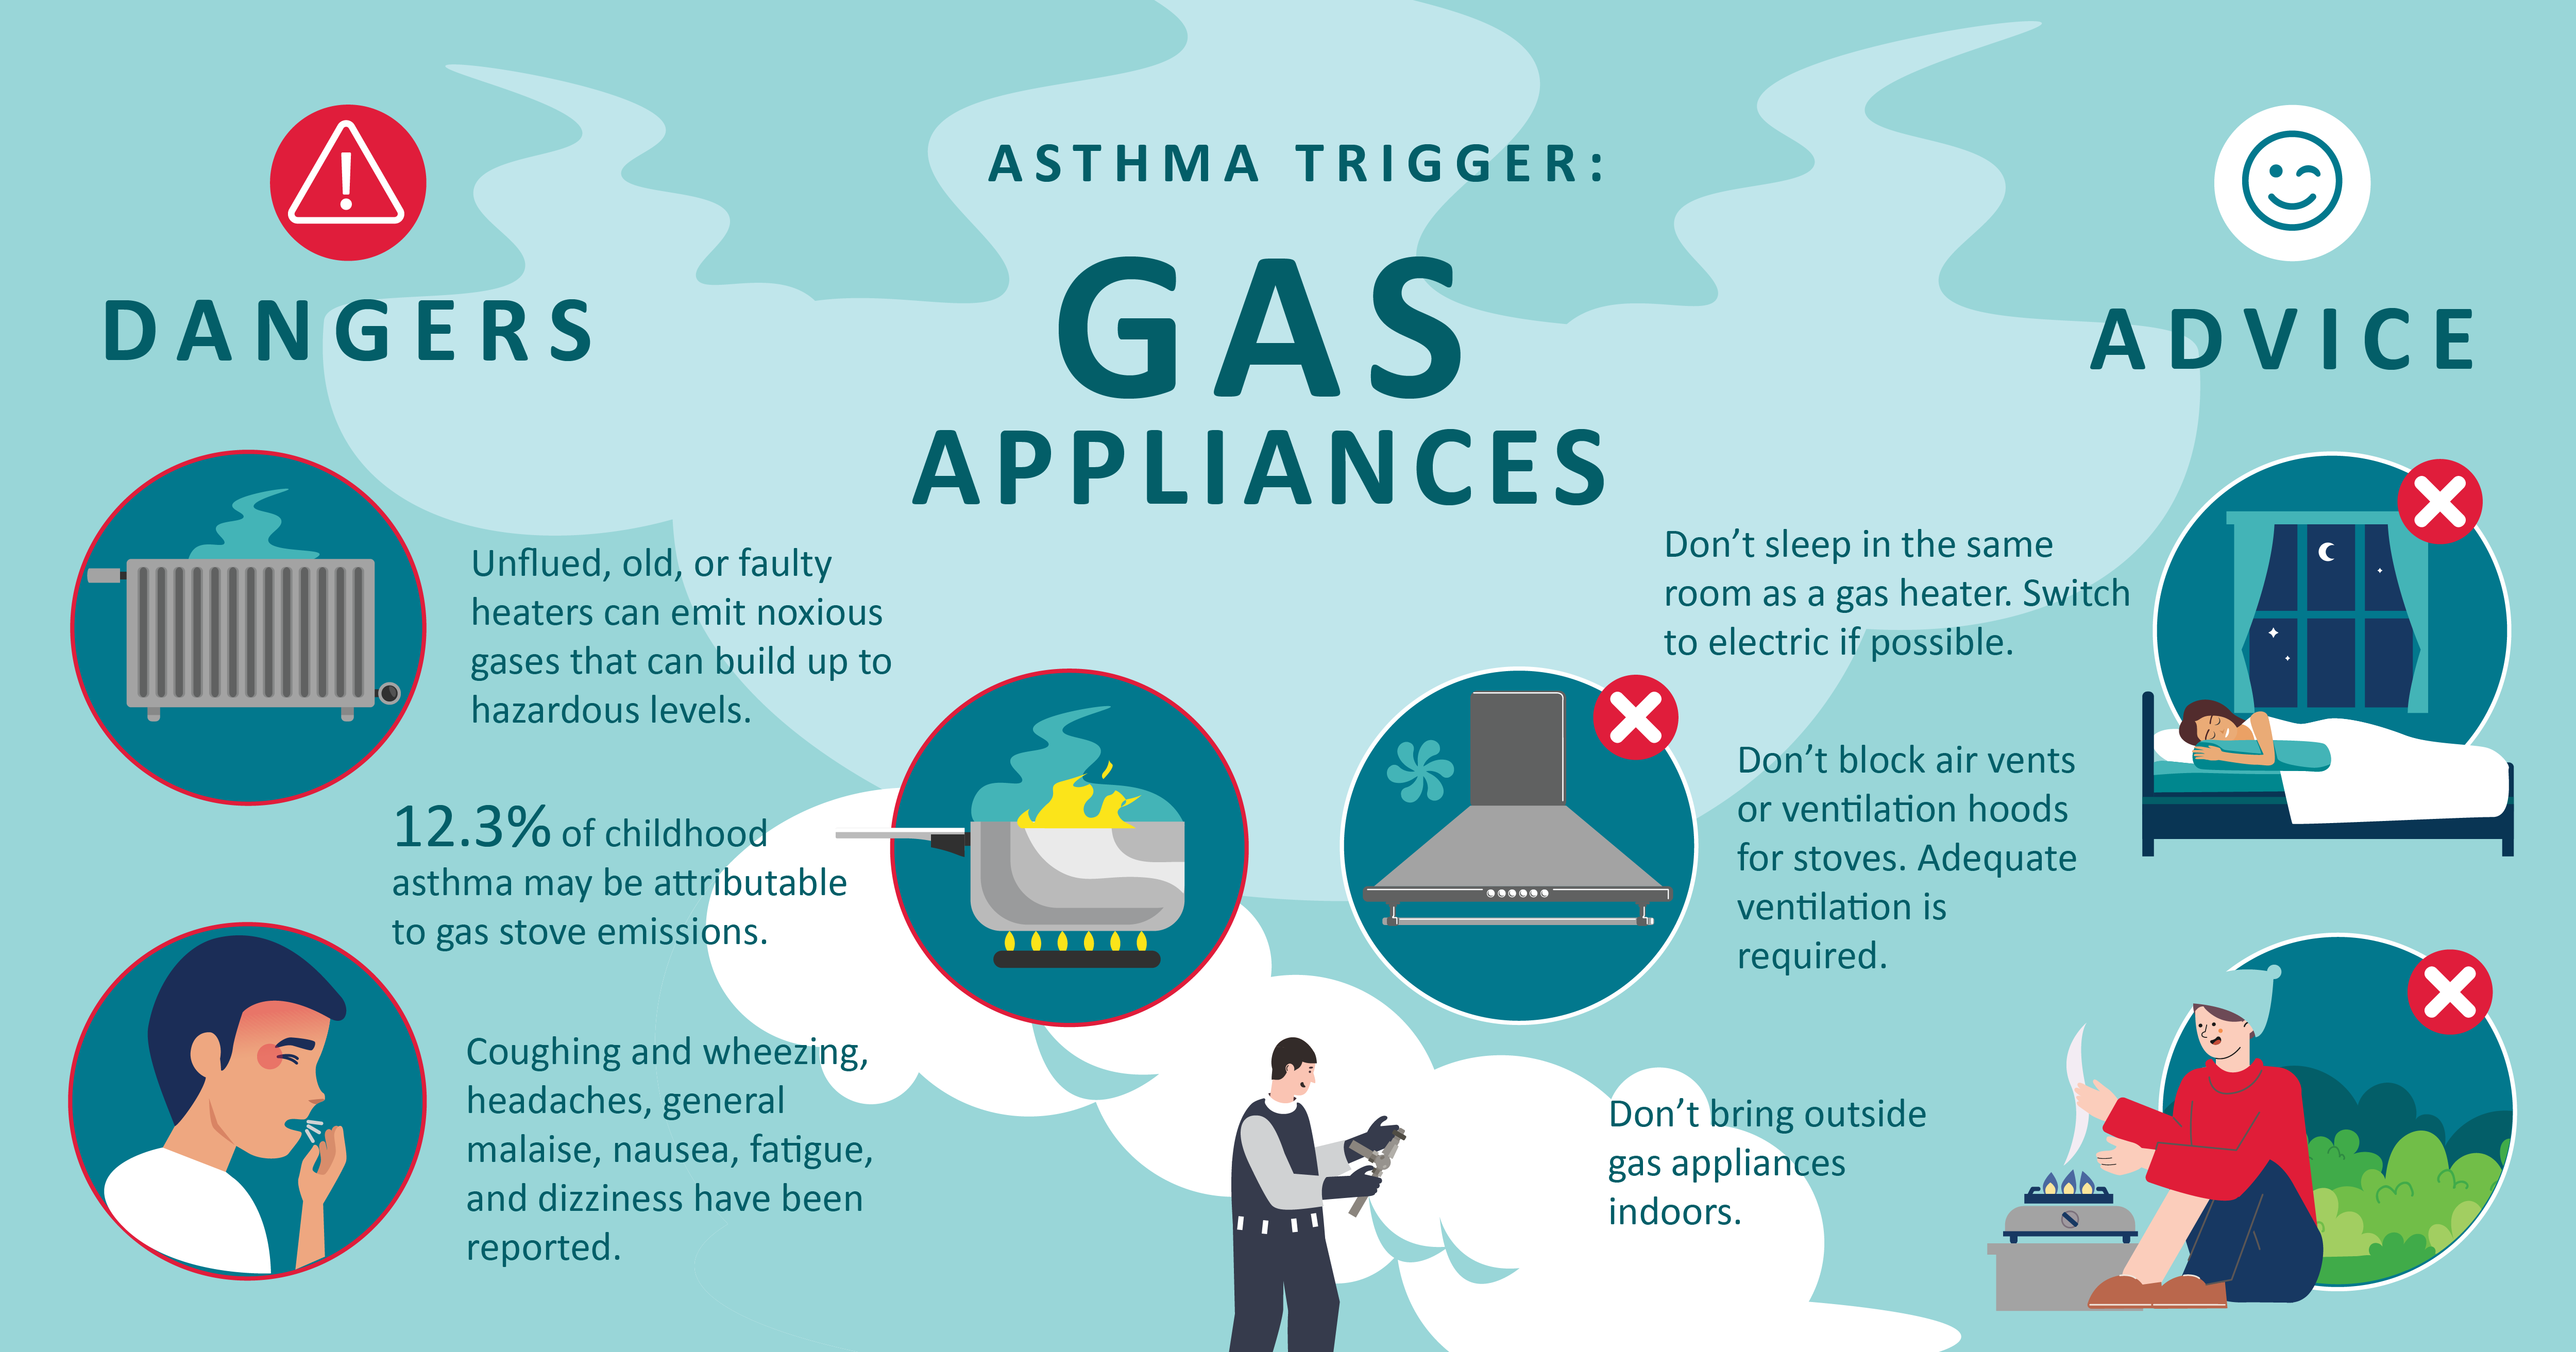 Asthma trigger: Gas appliances